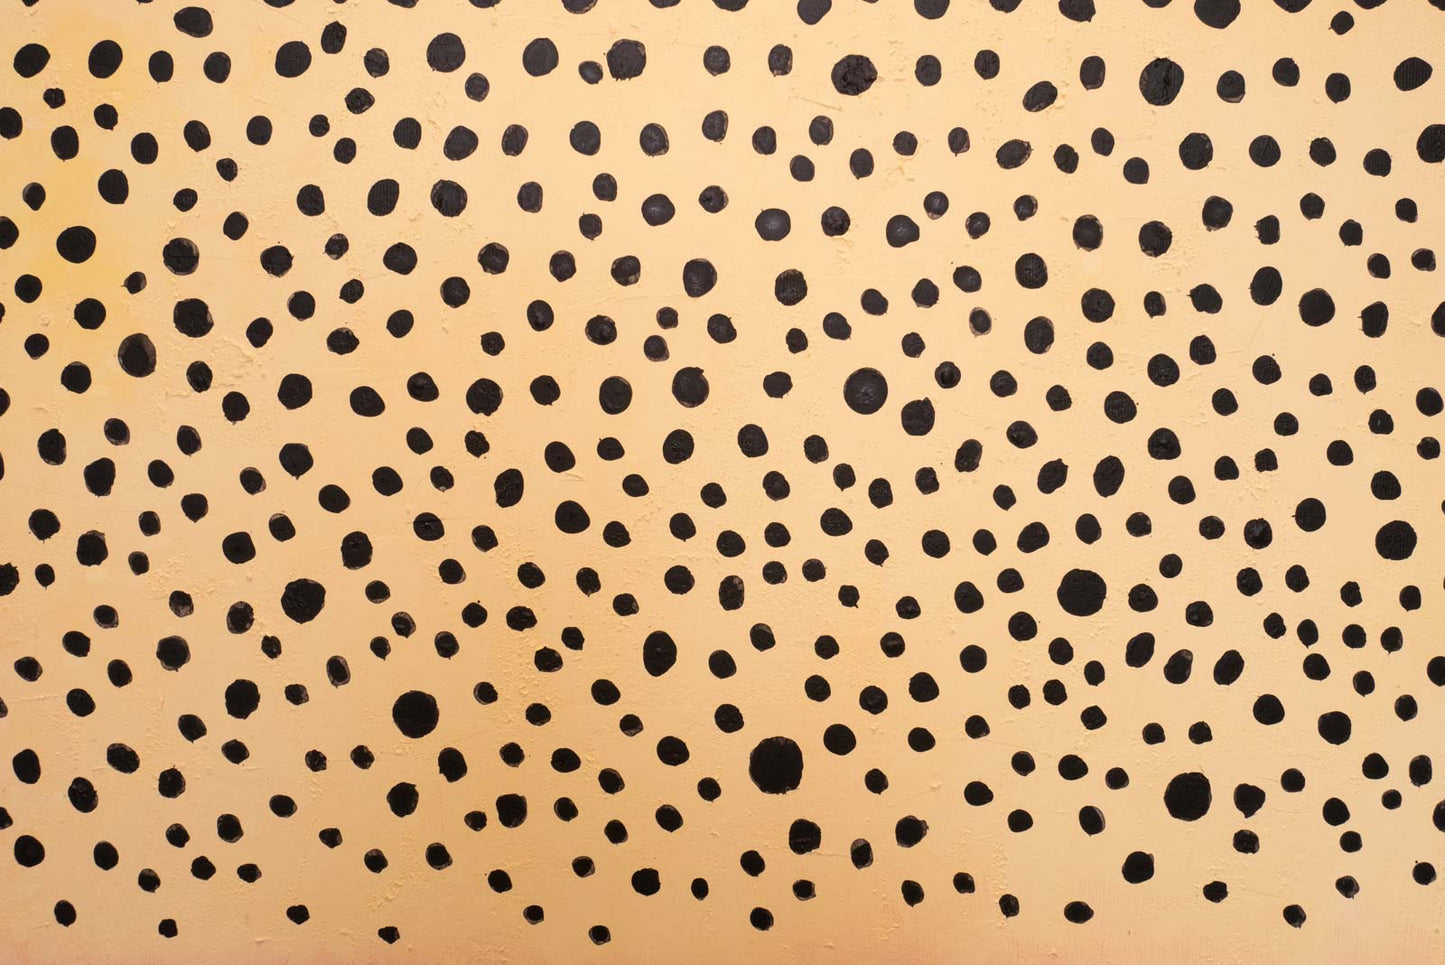 Dots on a Rothko No. 04 "Serengeti" - Acrylic on Canvas